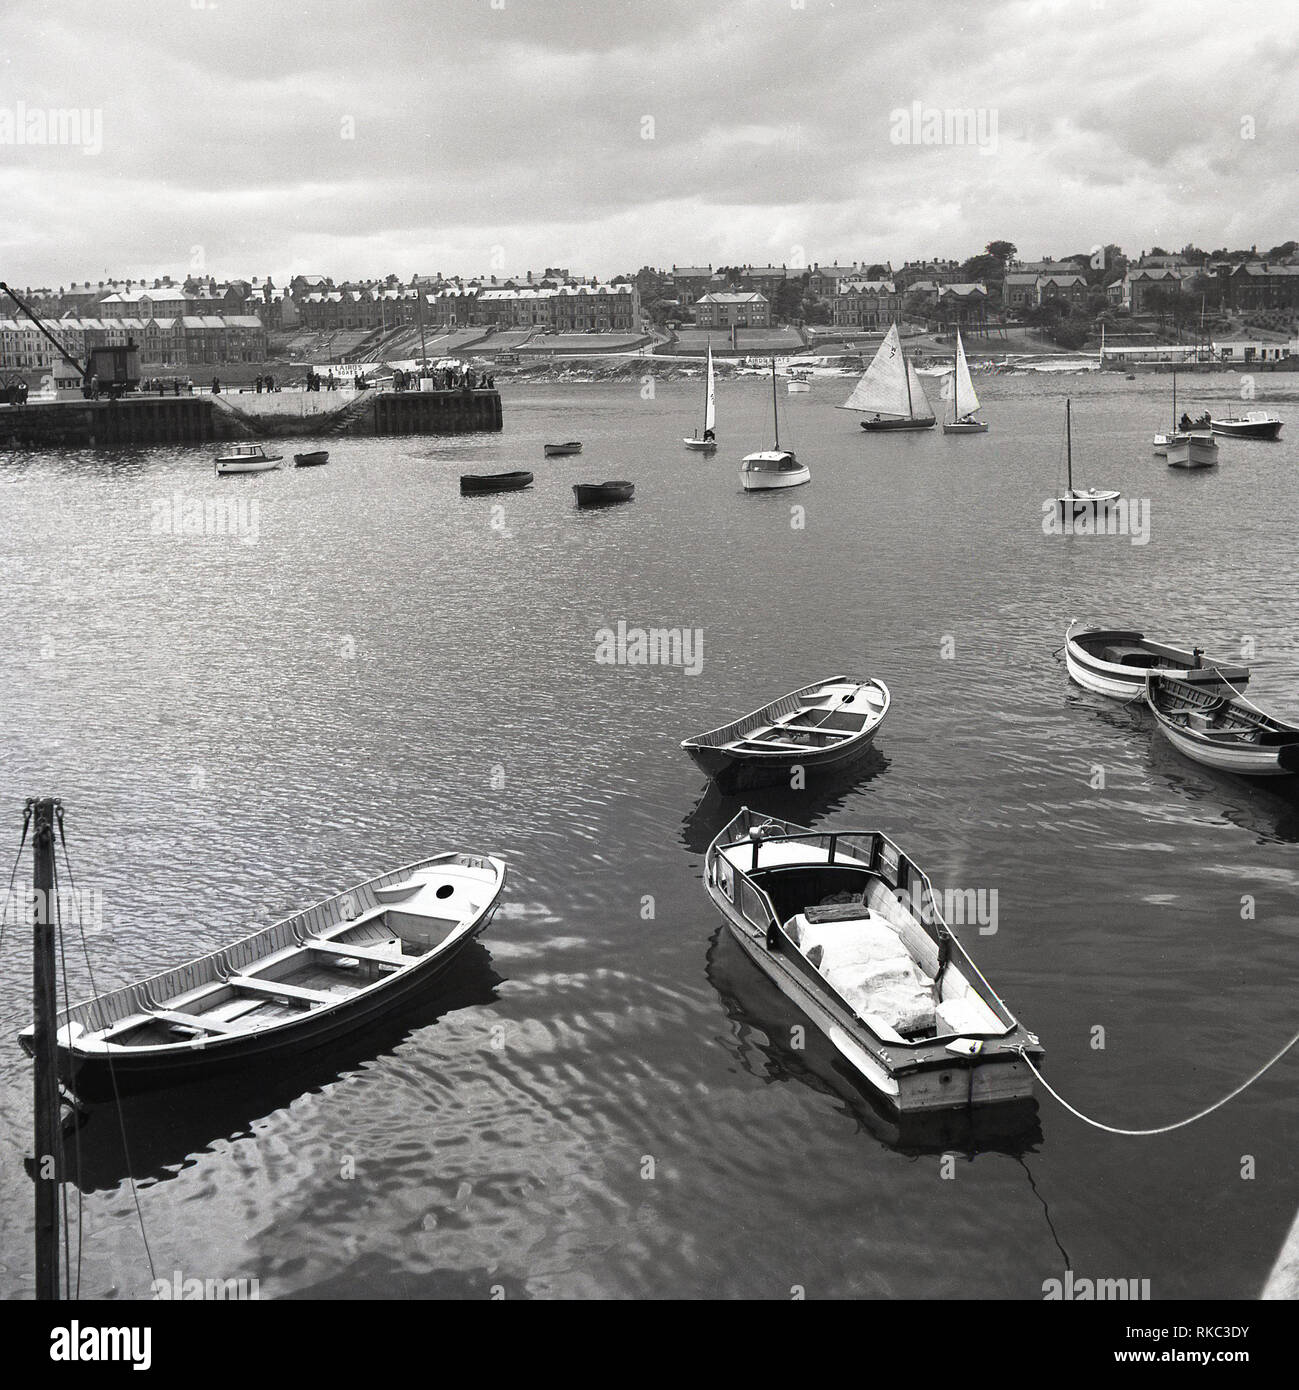 Années 1950, historique, une vue sur le port ou le port de plaisance de Bangor, Irlande du Nord montrant les bateaux et le paysage. Dans la distance qu'un signe pour 'Bateaux Lairds'. Bangor est le plus grand port de plaisance. Banque D'Images